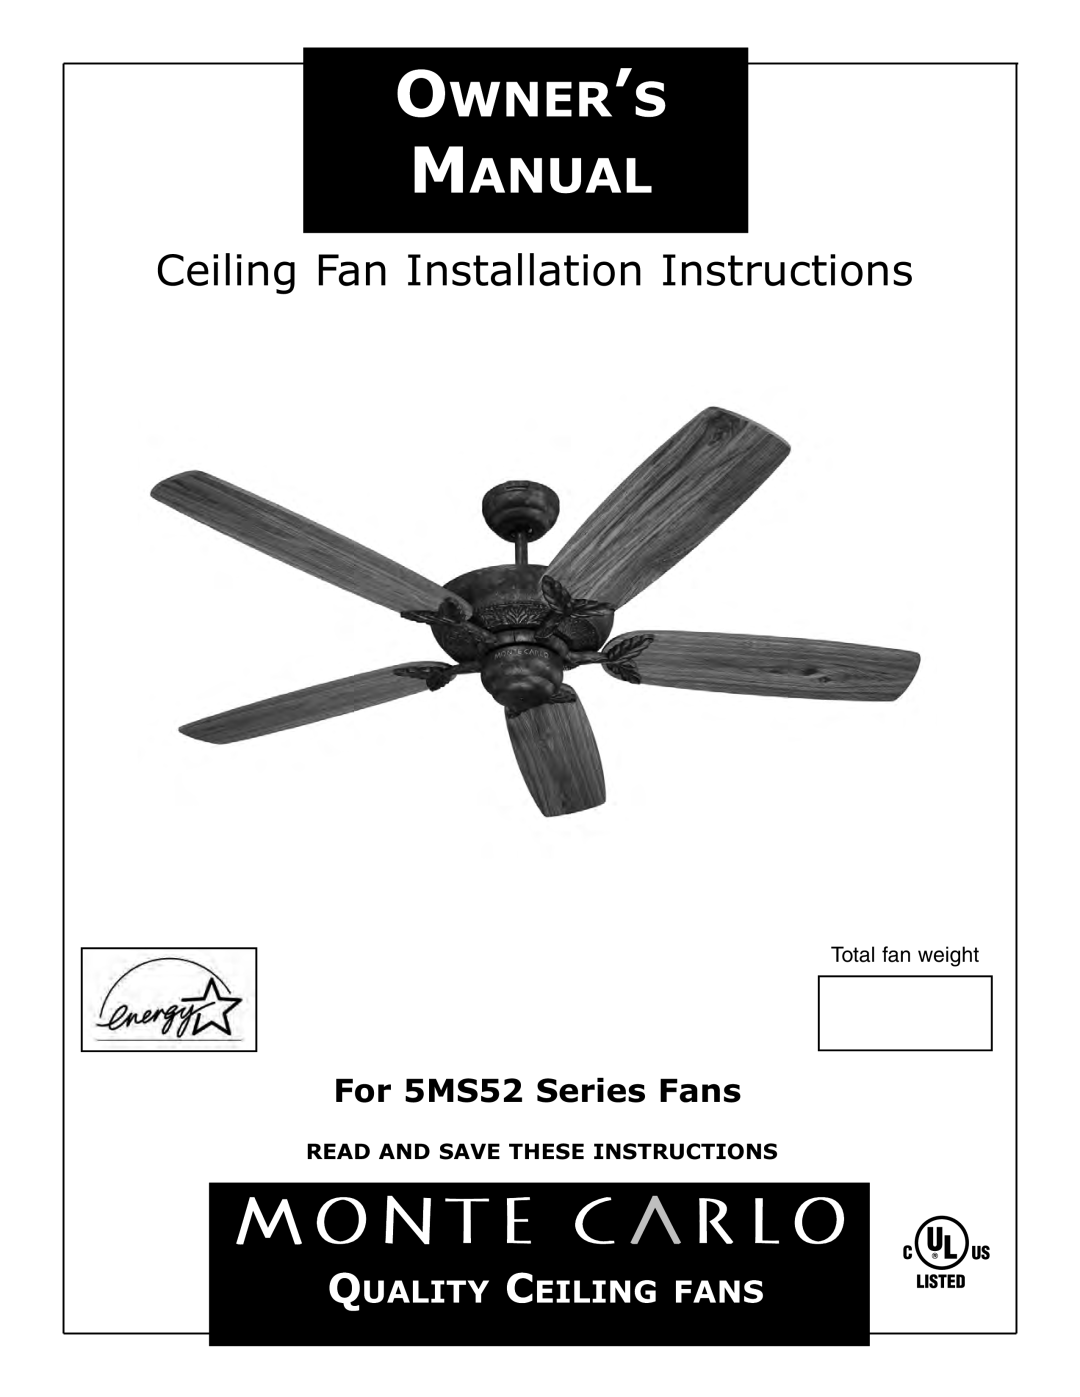 Monte Carlo Fan Company installation instructions Ceiling Fan Installation Instructions, For 5MS52 Series Fans 